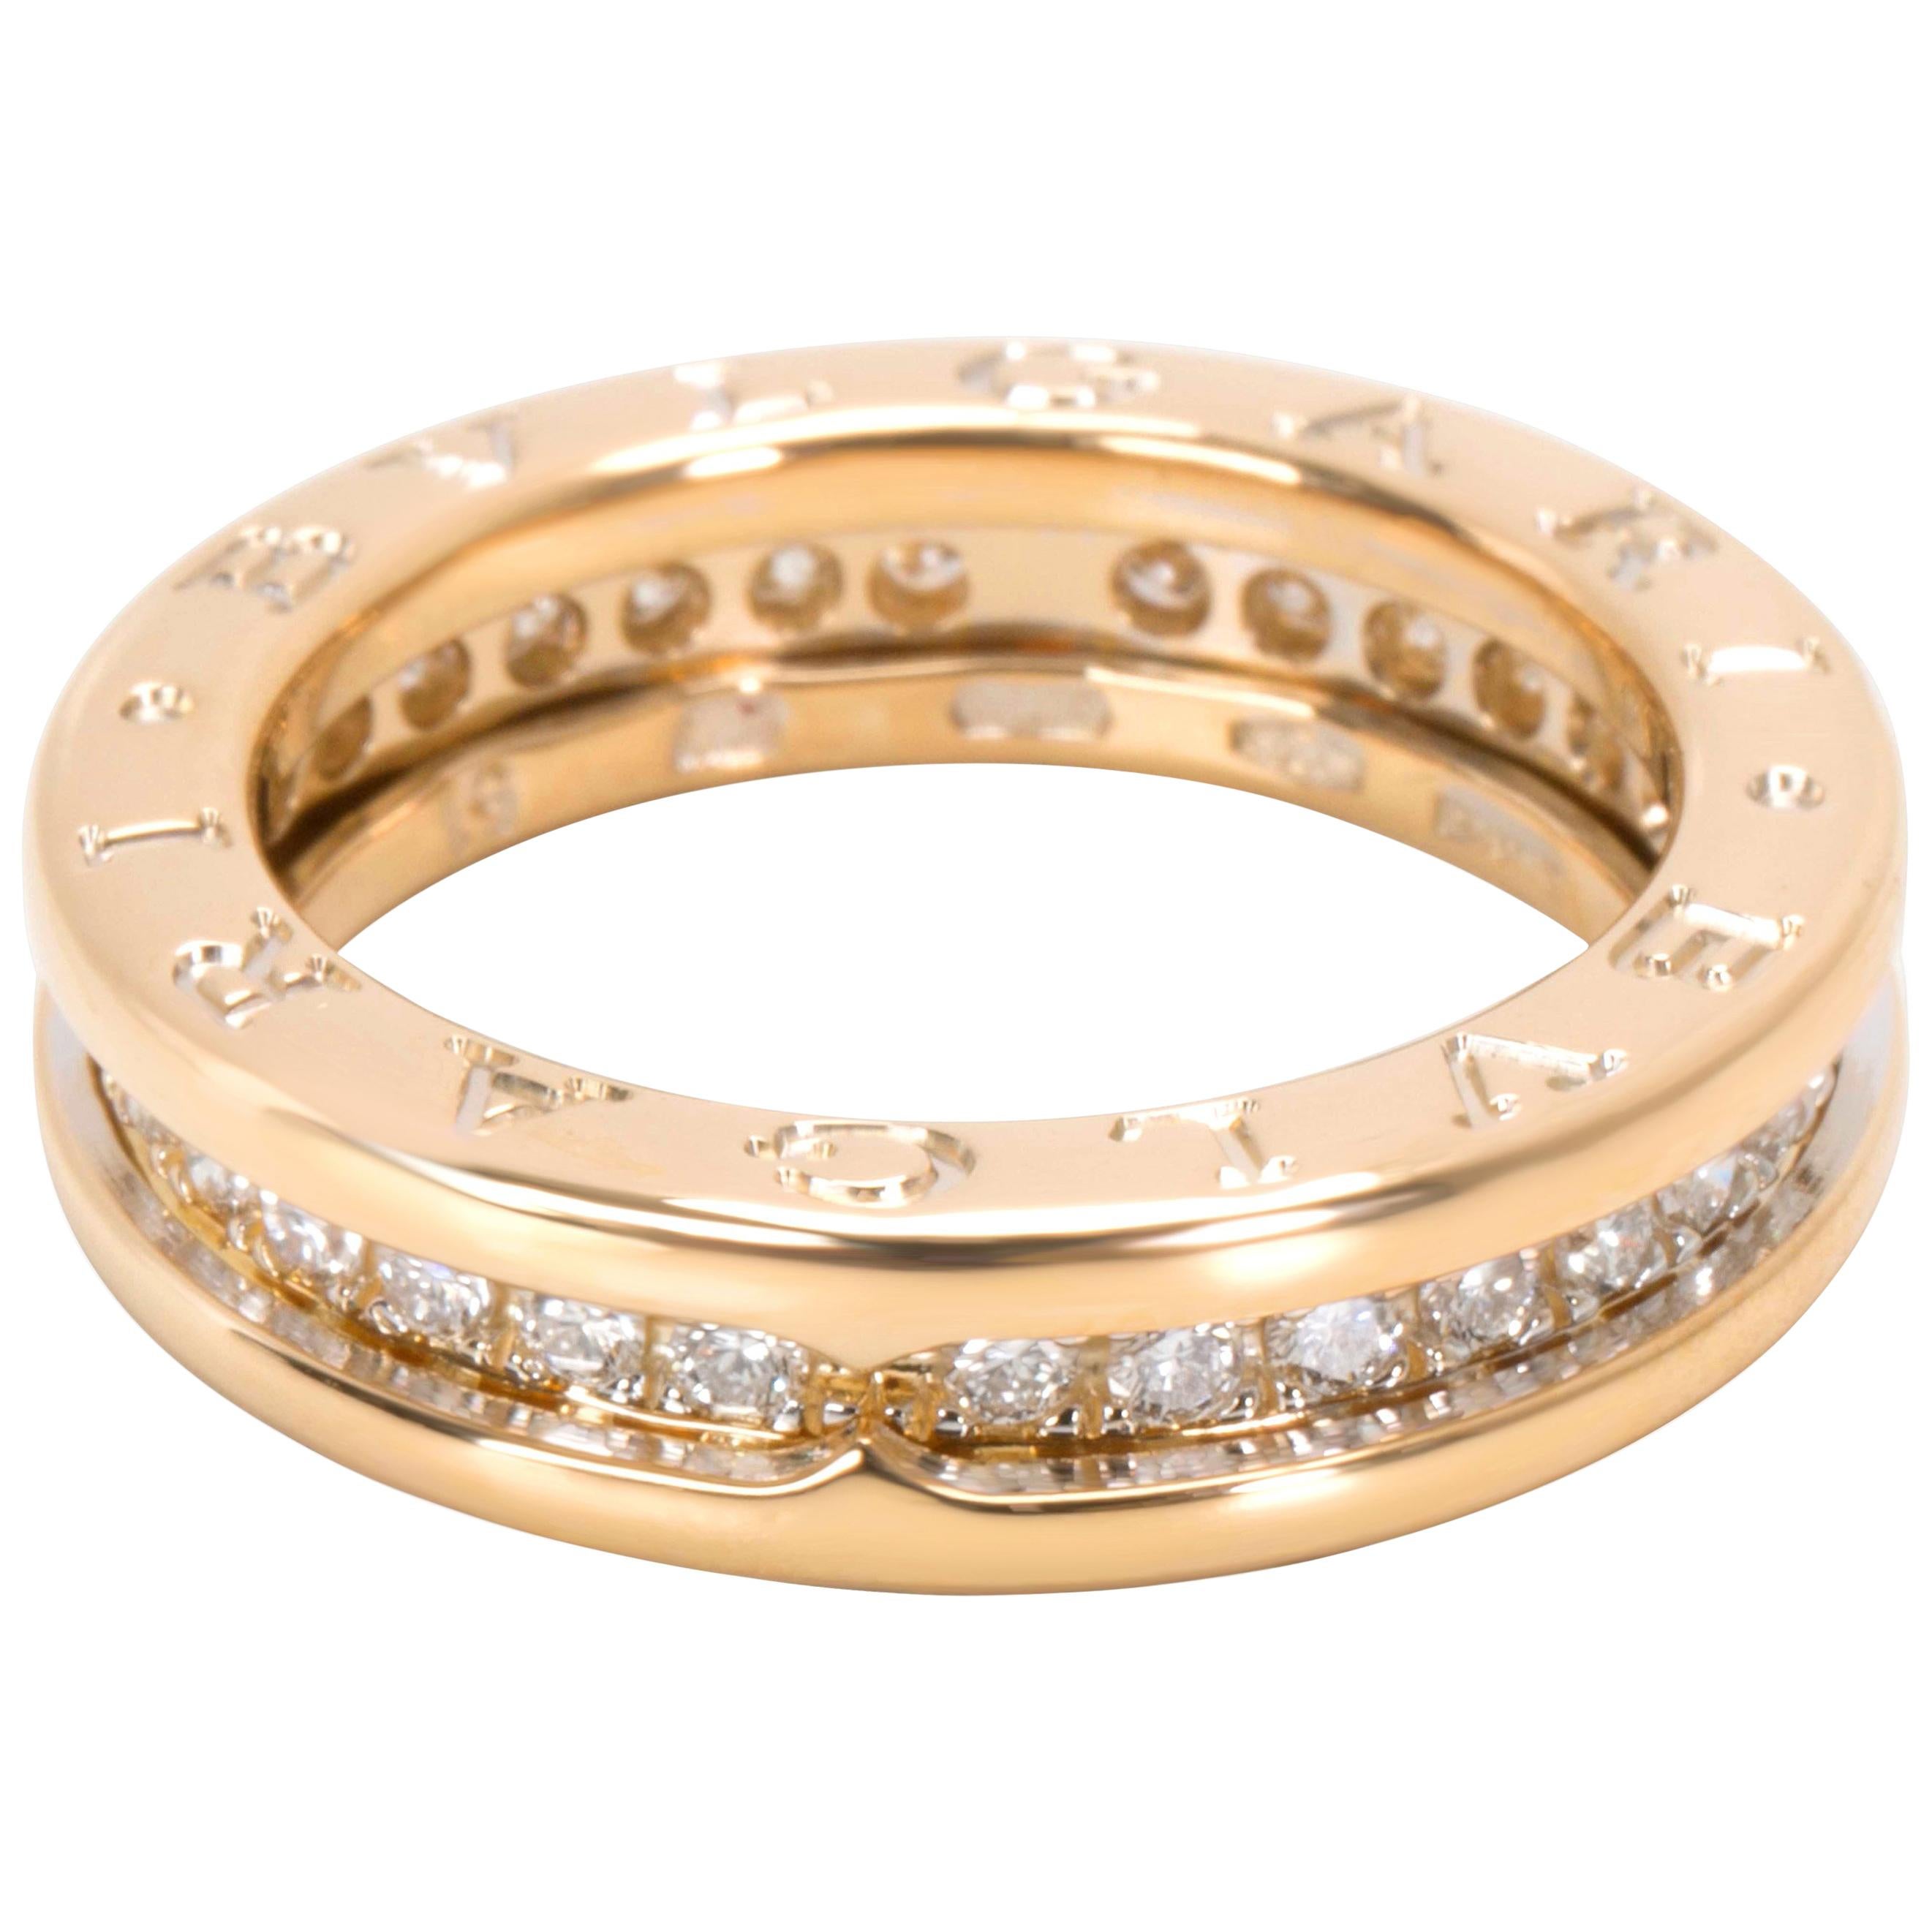 Bulgari B.Zero1 Diamond Ring in 18 Karat Yellow Gold '0.64 Carat